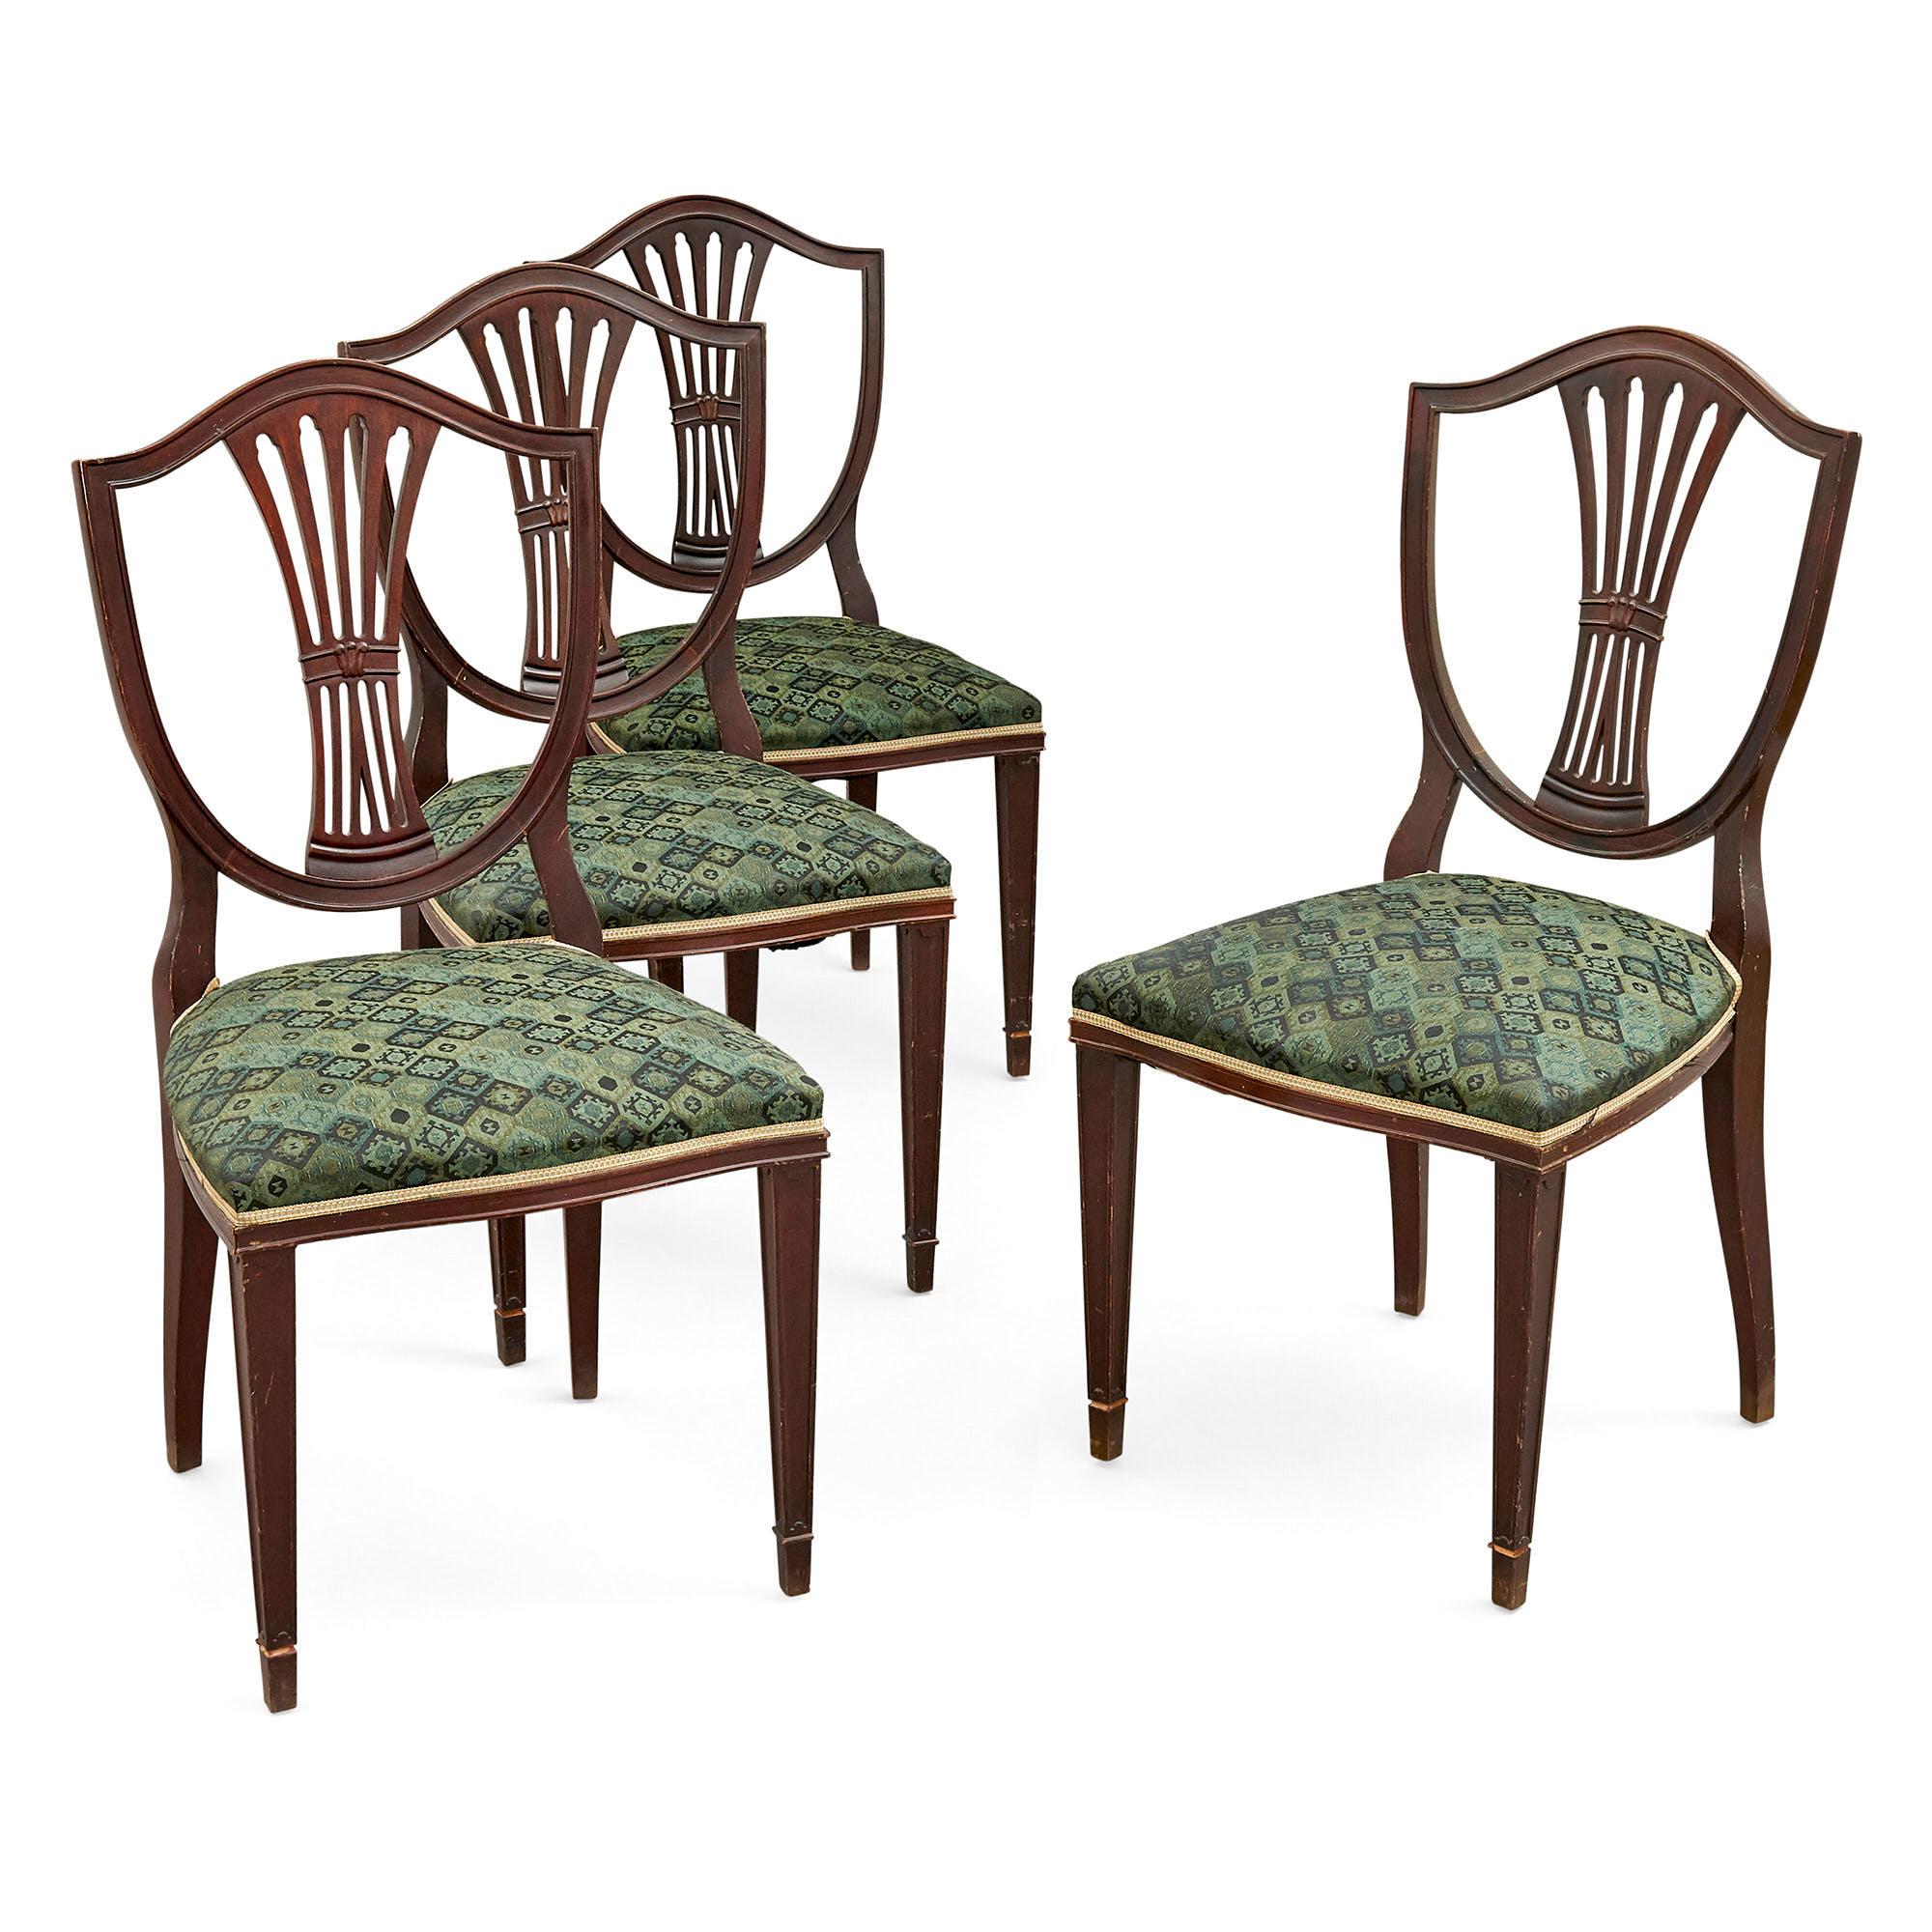 Satz von acht gepolsterten Esszimmerstühlen aus der Edwardianischen Zeit
Englisch, um 1905
Höhe 94cm, Breite 48cm, Tiefe 48cm

Die Stühle dieses achtteiligen Sets sind im edwardianischen Stil gefertigt. Jeder Stuhl hat eine durchbrochene,